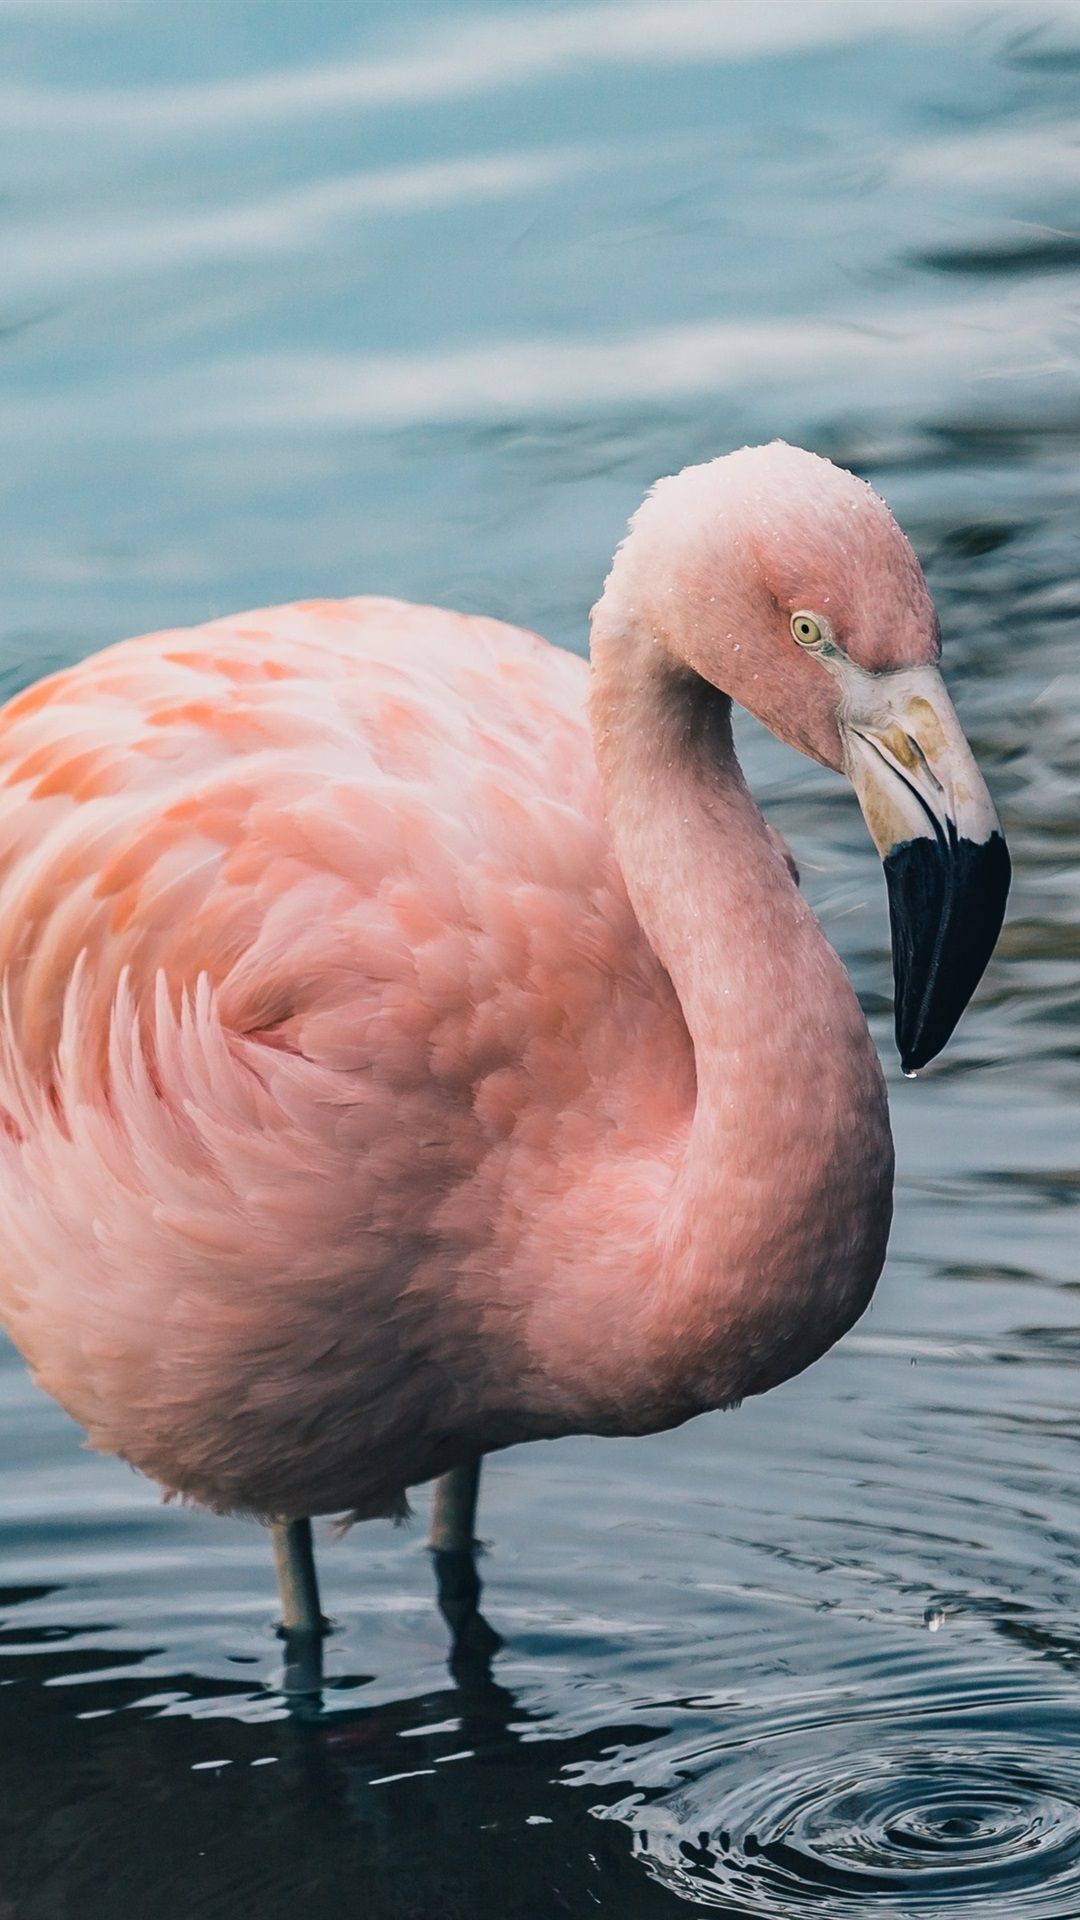  Flamingo Hintergrundbild 1080x1920. Ein Flamingo Im Wasser Stehend 1080x1920 IPhone 8 7 6 6S Plus Hintergrundbilder, HD, Bild